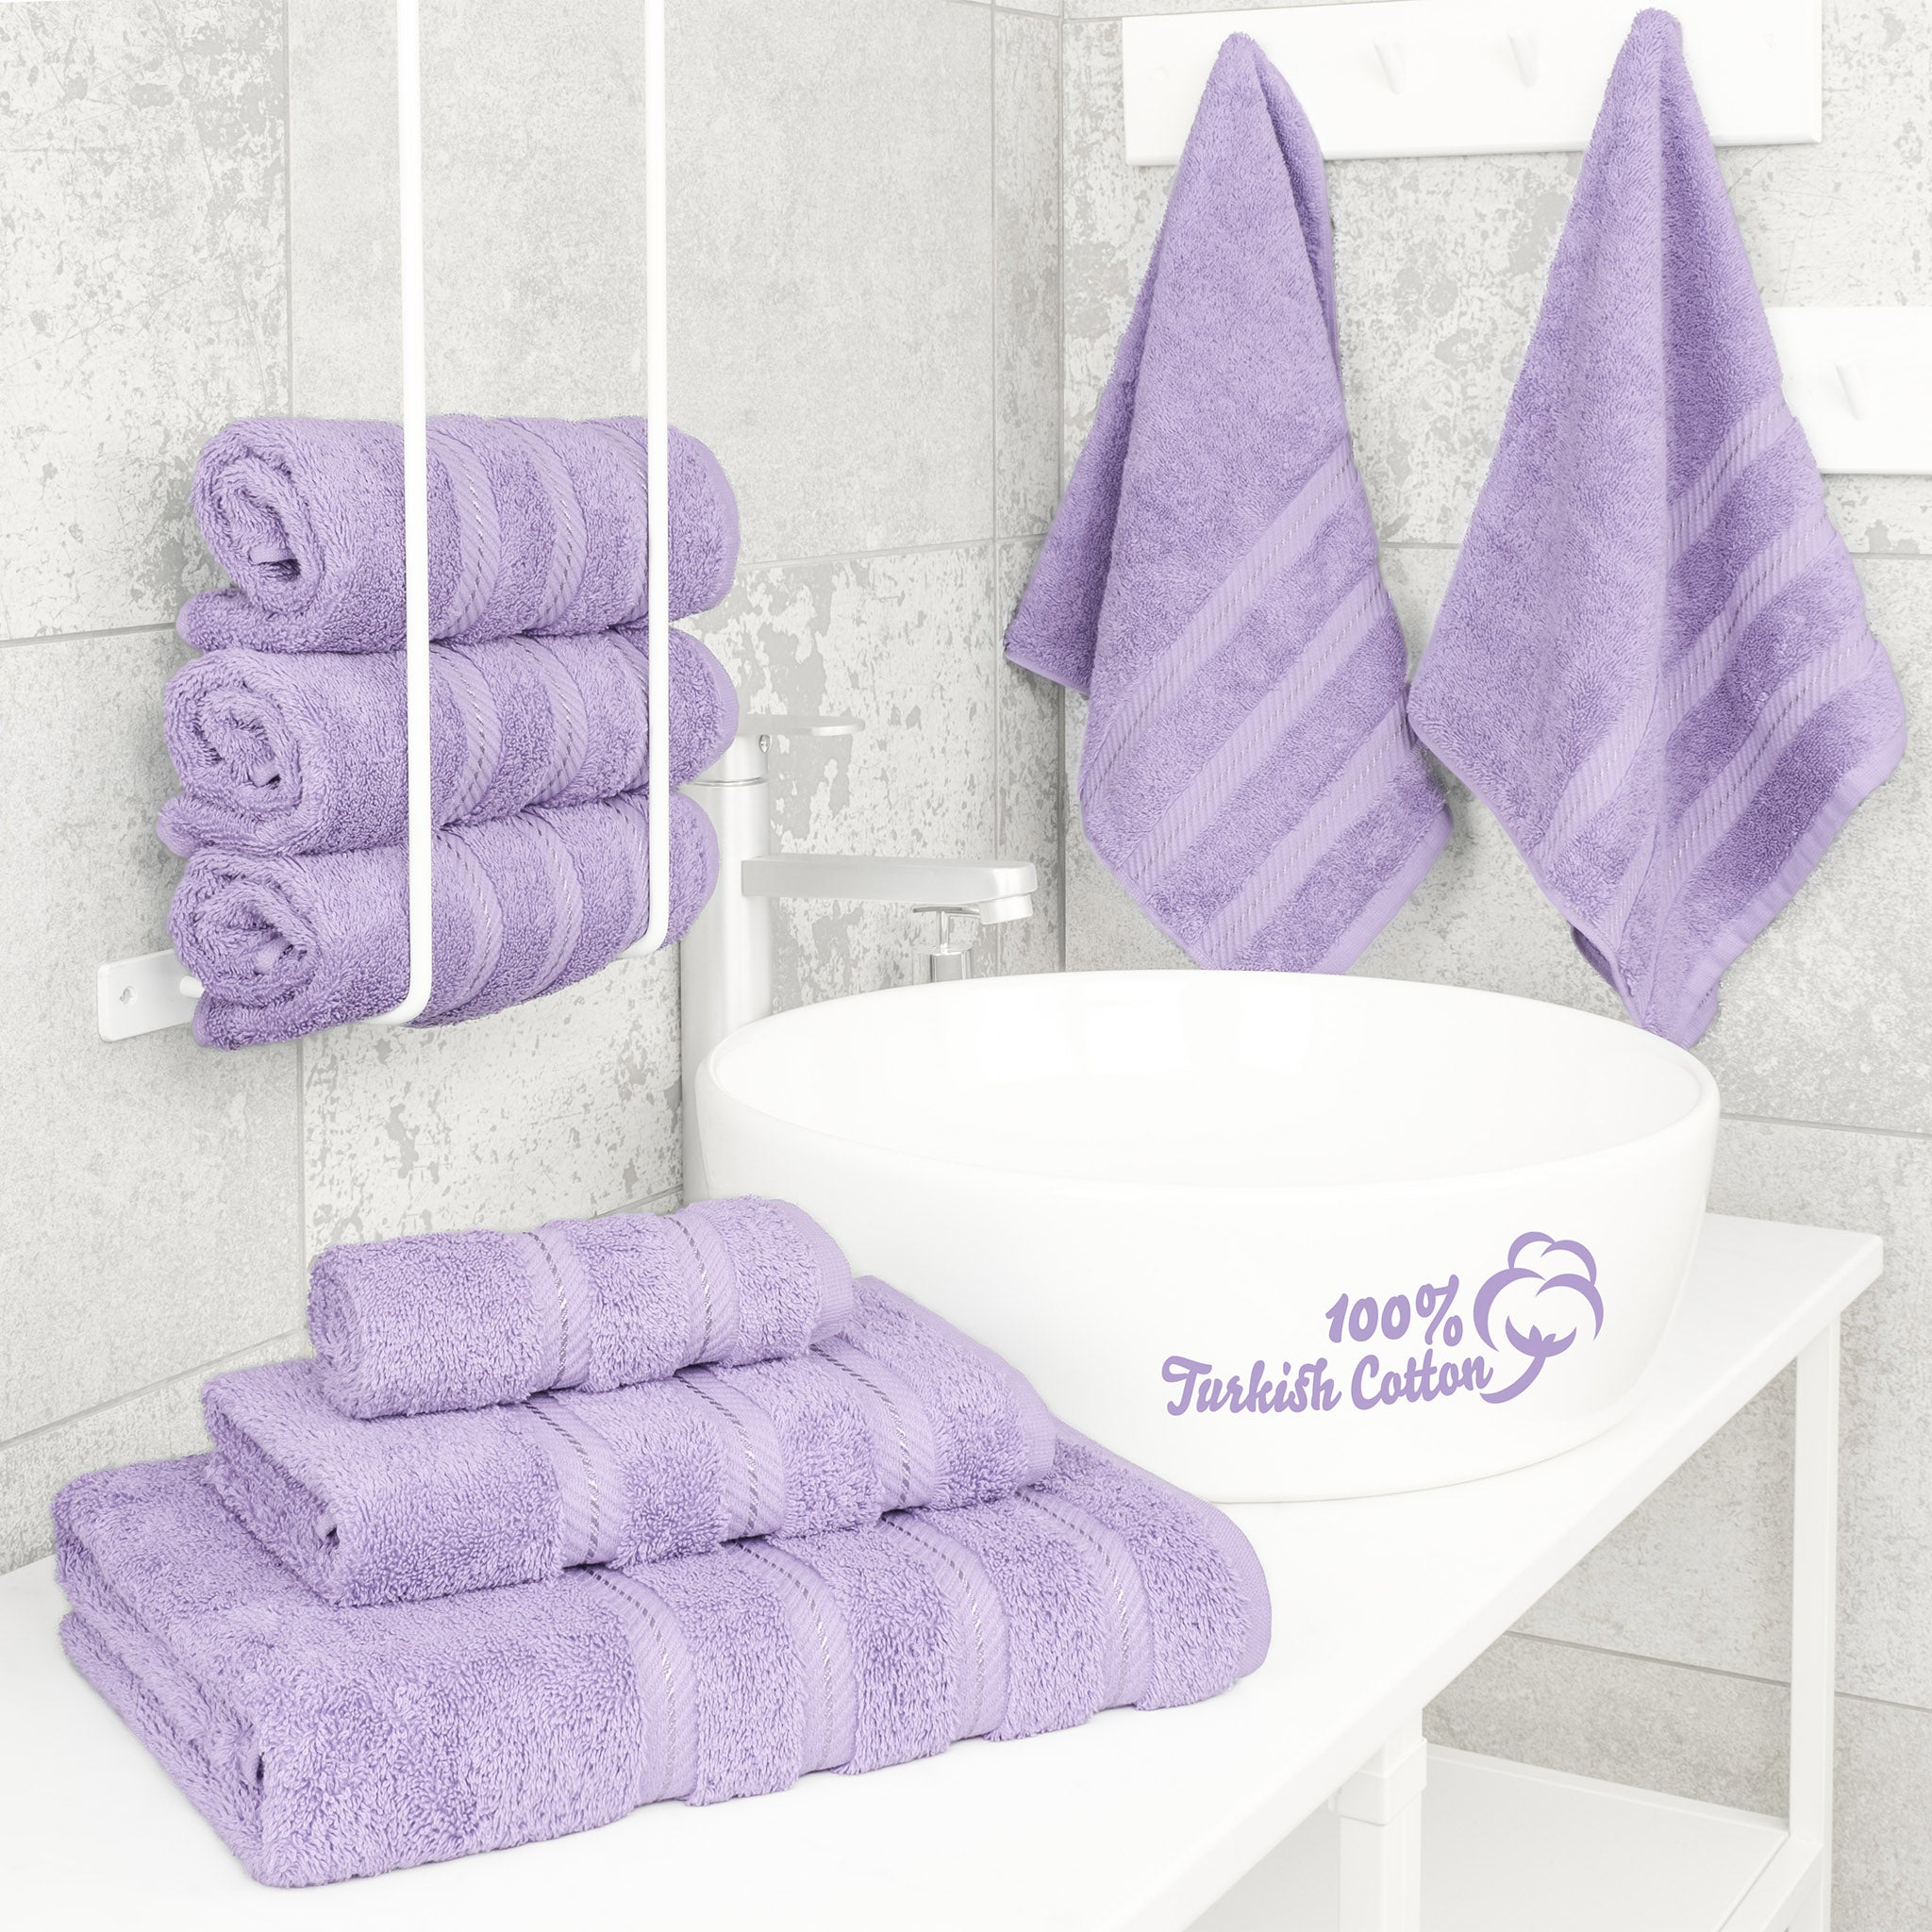 American Soft Linen 100% Turkish Cotton 6 Piece Towel Set Wholesale lilac-2